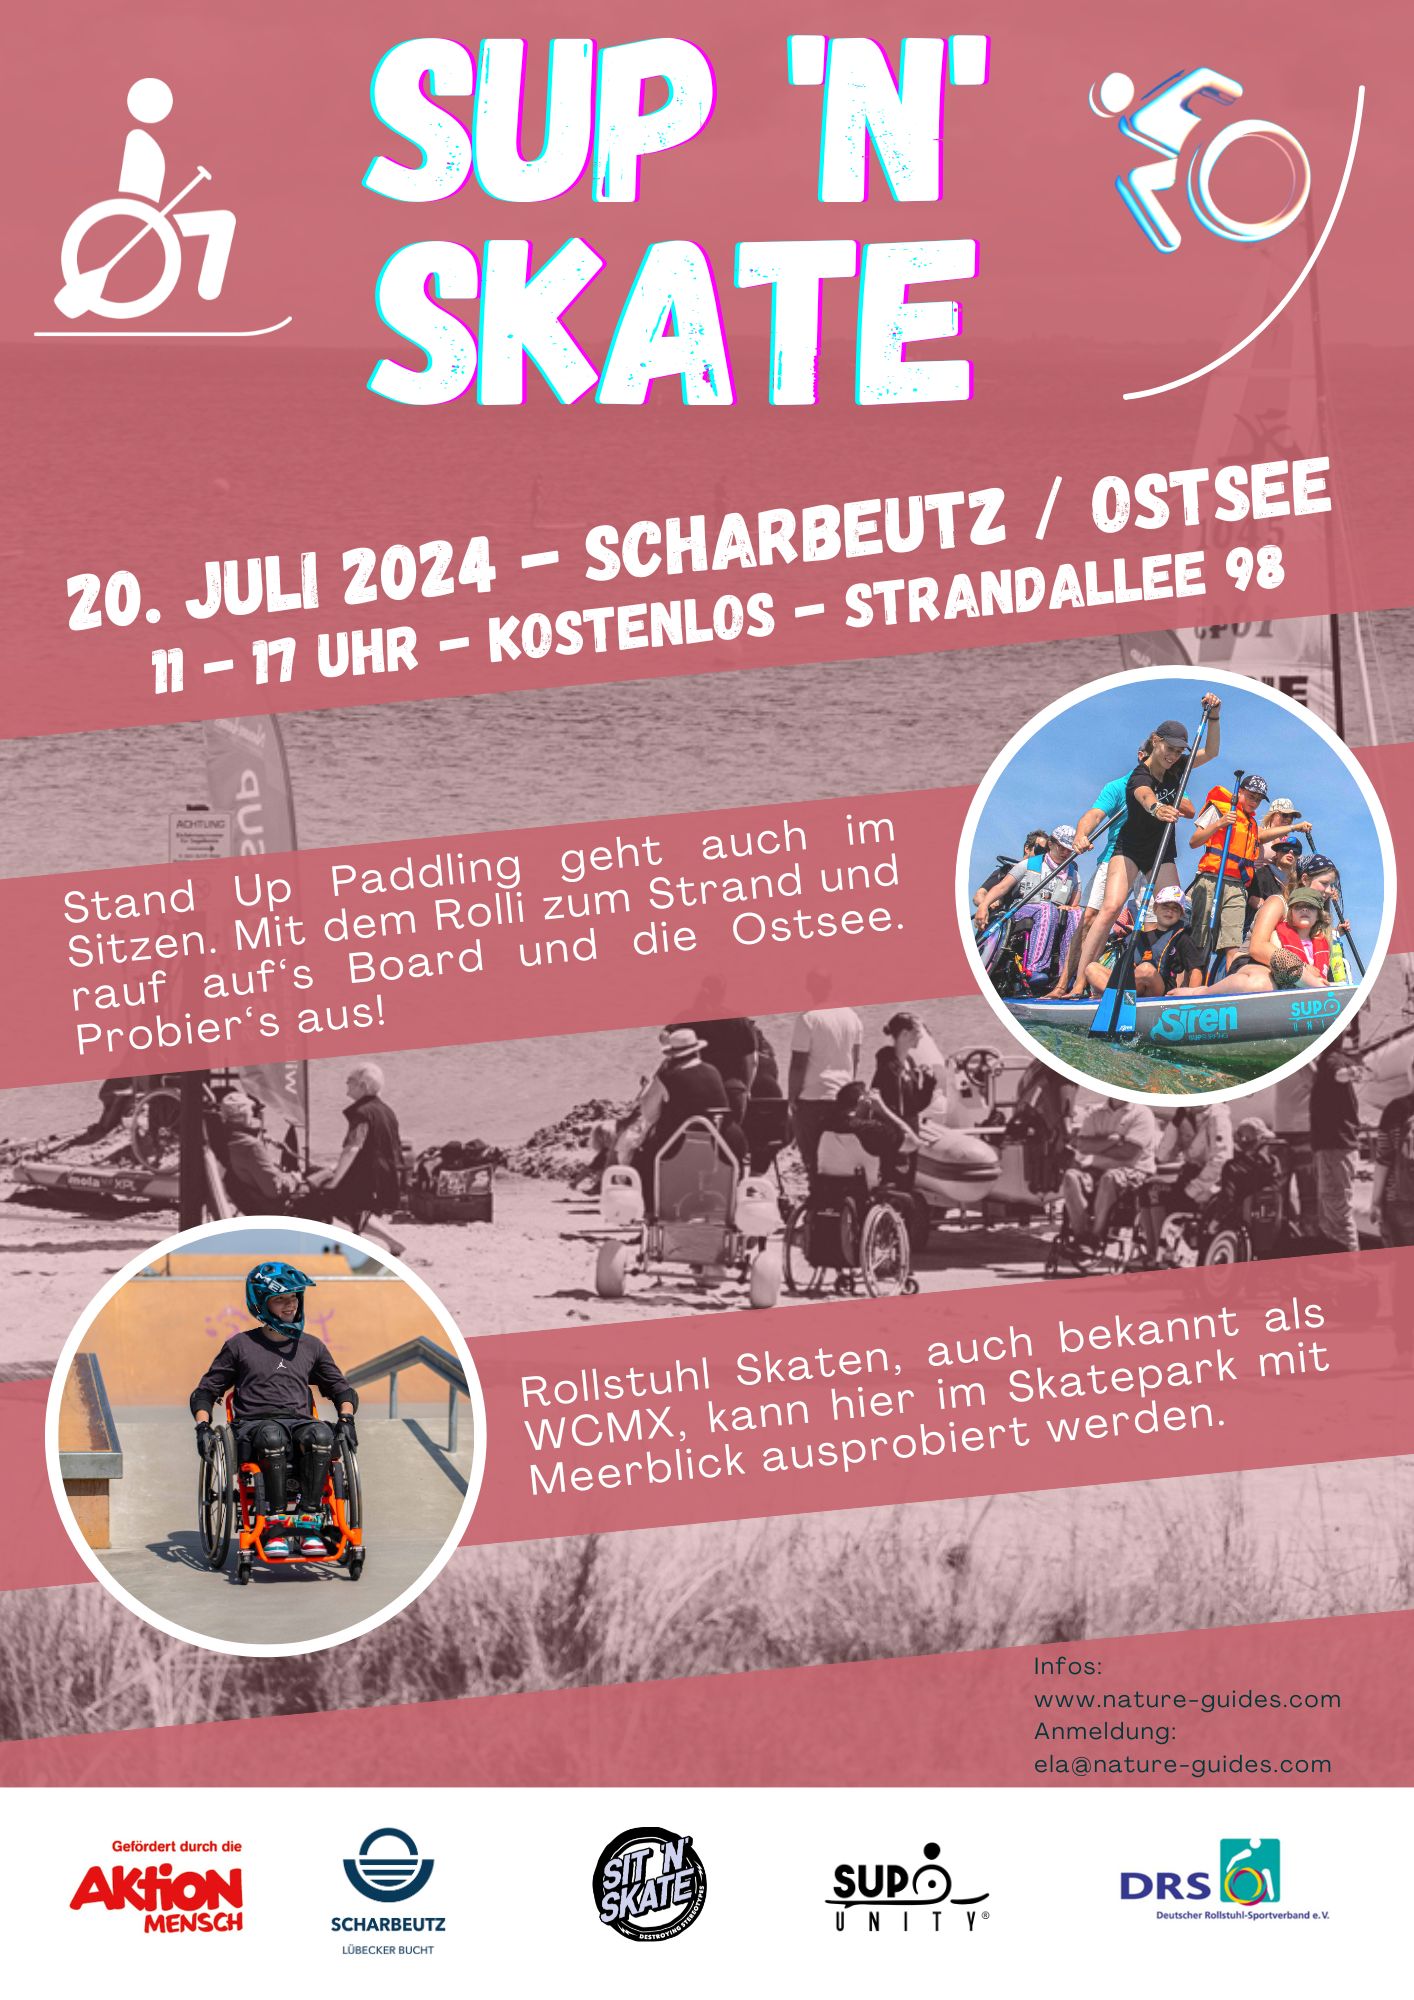 Veranstaltungsankündigung für SUP N SKATE am 20 . Juli 2024 in Scharbeutz an der Ostsee von 11 bis 17 Uhr Strandallee 98 . kostenlos. Mit weiteren Informationen zu Stand Up Paddeling und Rollstuhl Skaten. Steht auch im Text der Webseite